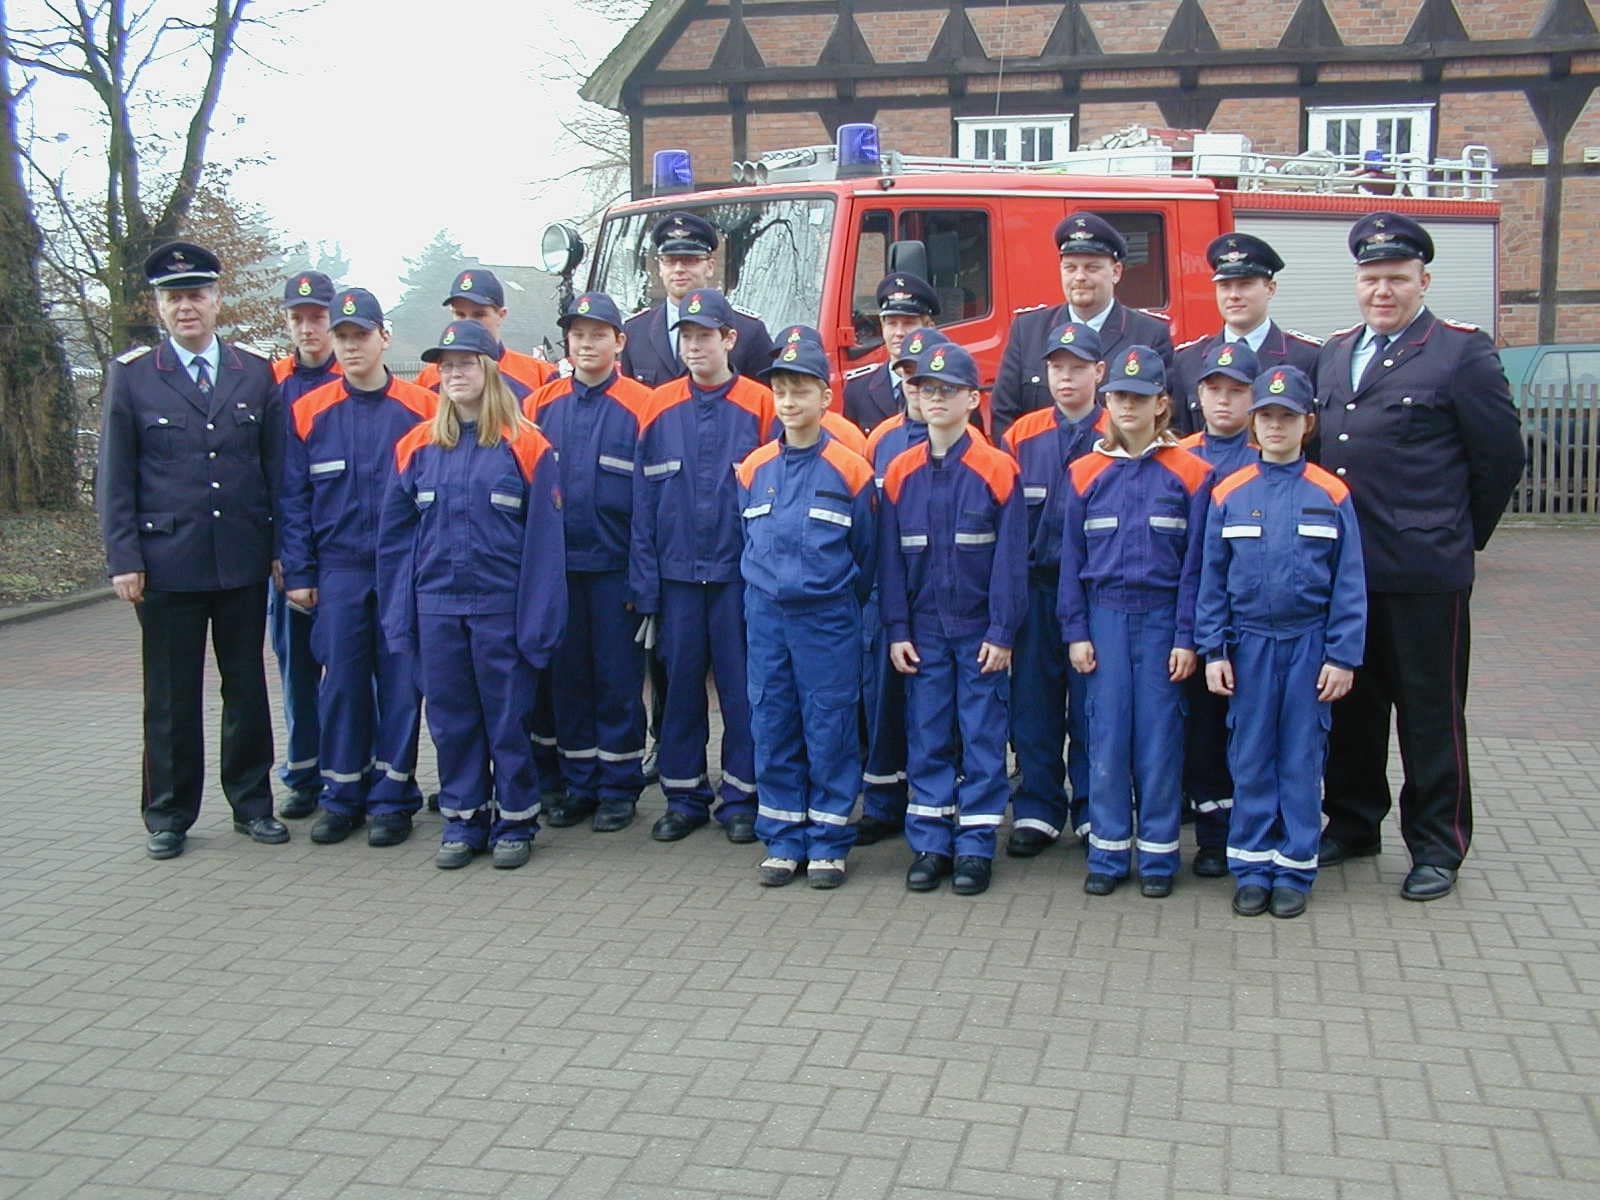 Gruppenbild mit den Gründungsmitgliedern 2013 (links OBM Wilhelm Hagemann, rechts Jugendwart Arndt)